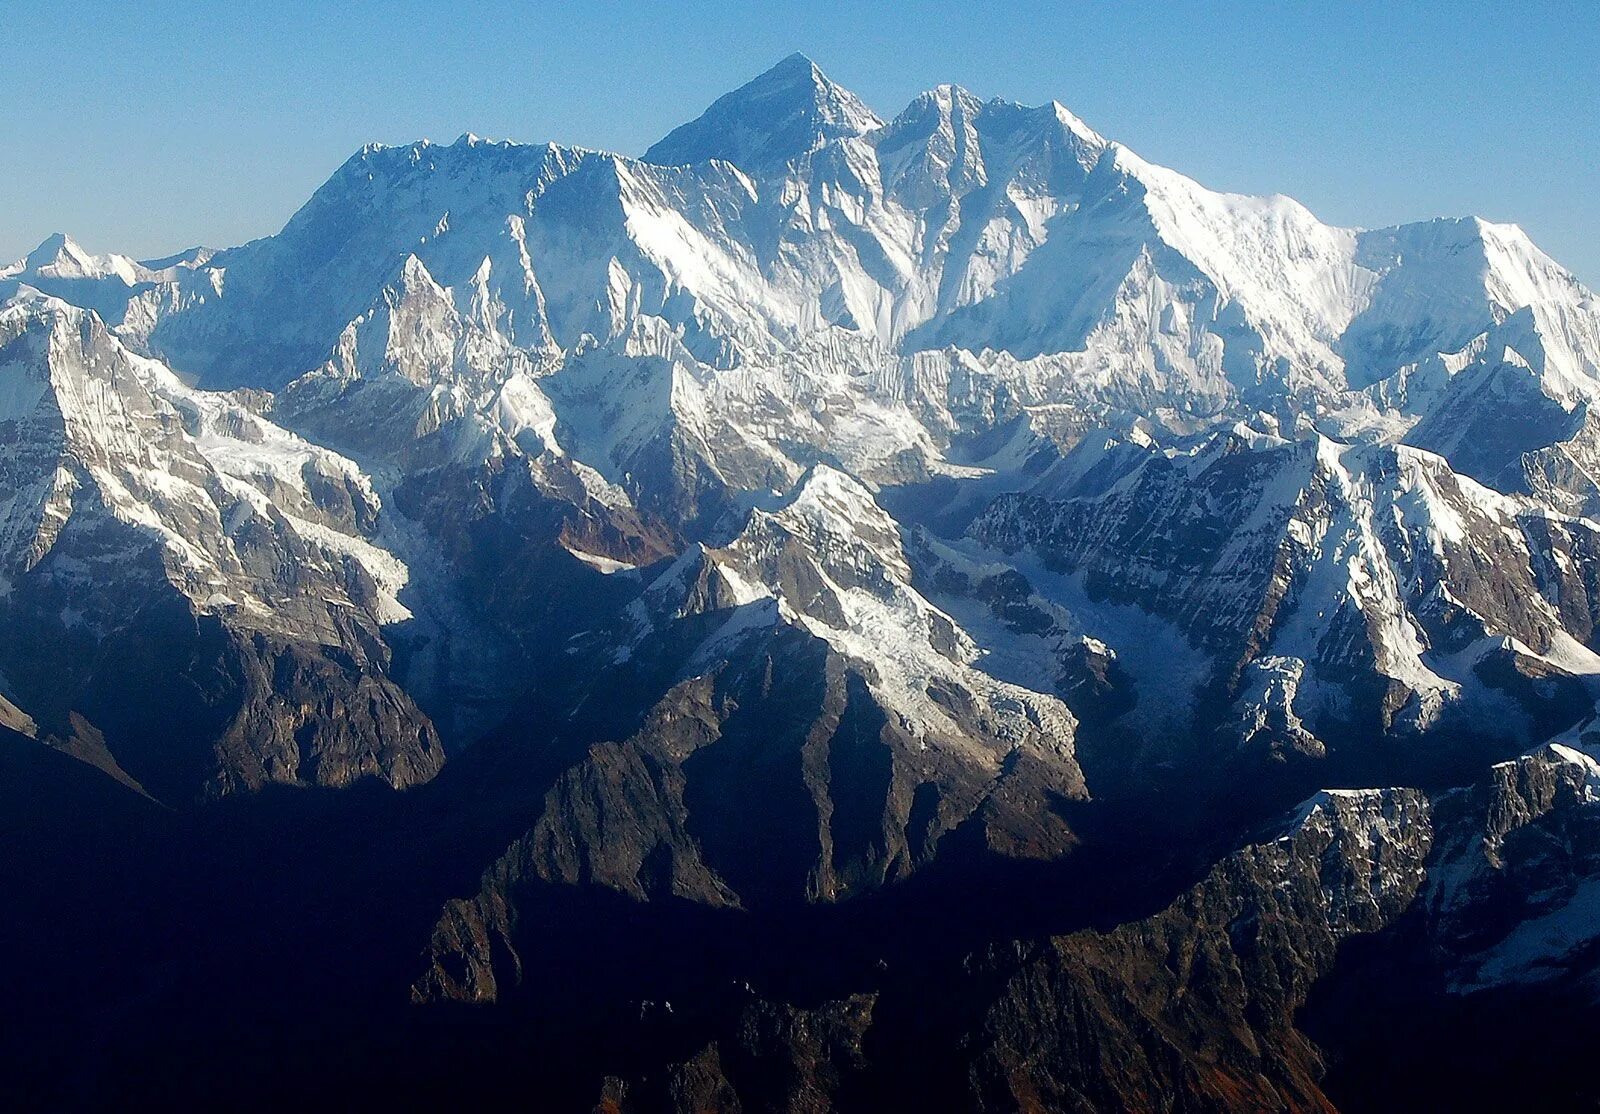 High mountain перевод. Гималаи Эверест. Гора Джомолунгма. Лхоцзе Гималаи Непал. • Эверест или Джомолунгма (Гималаи)..